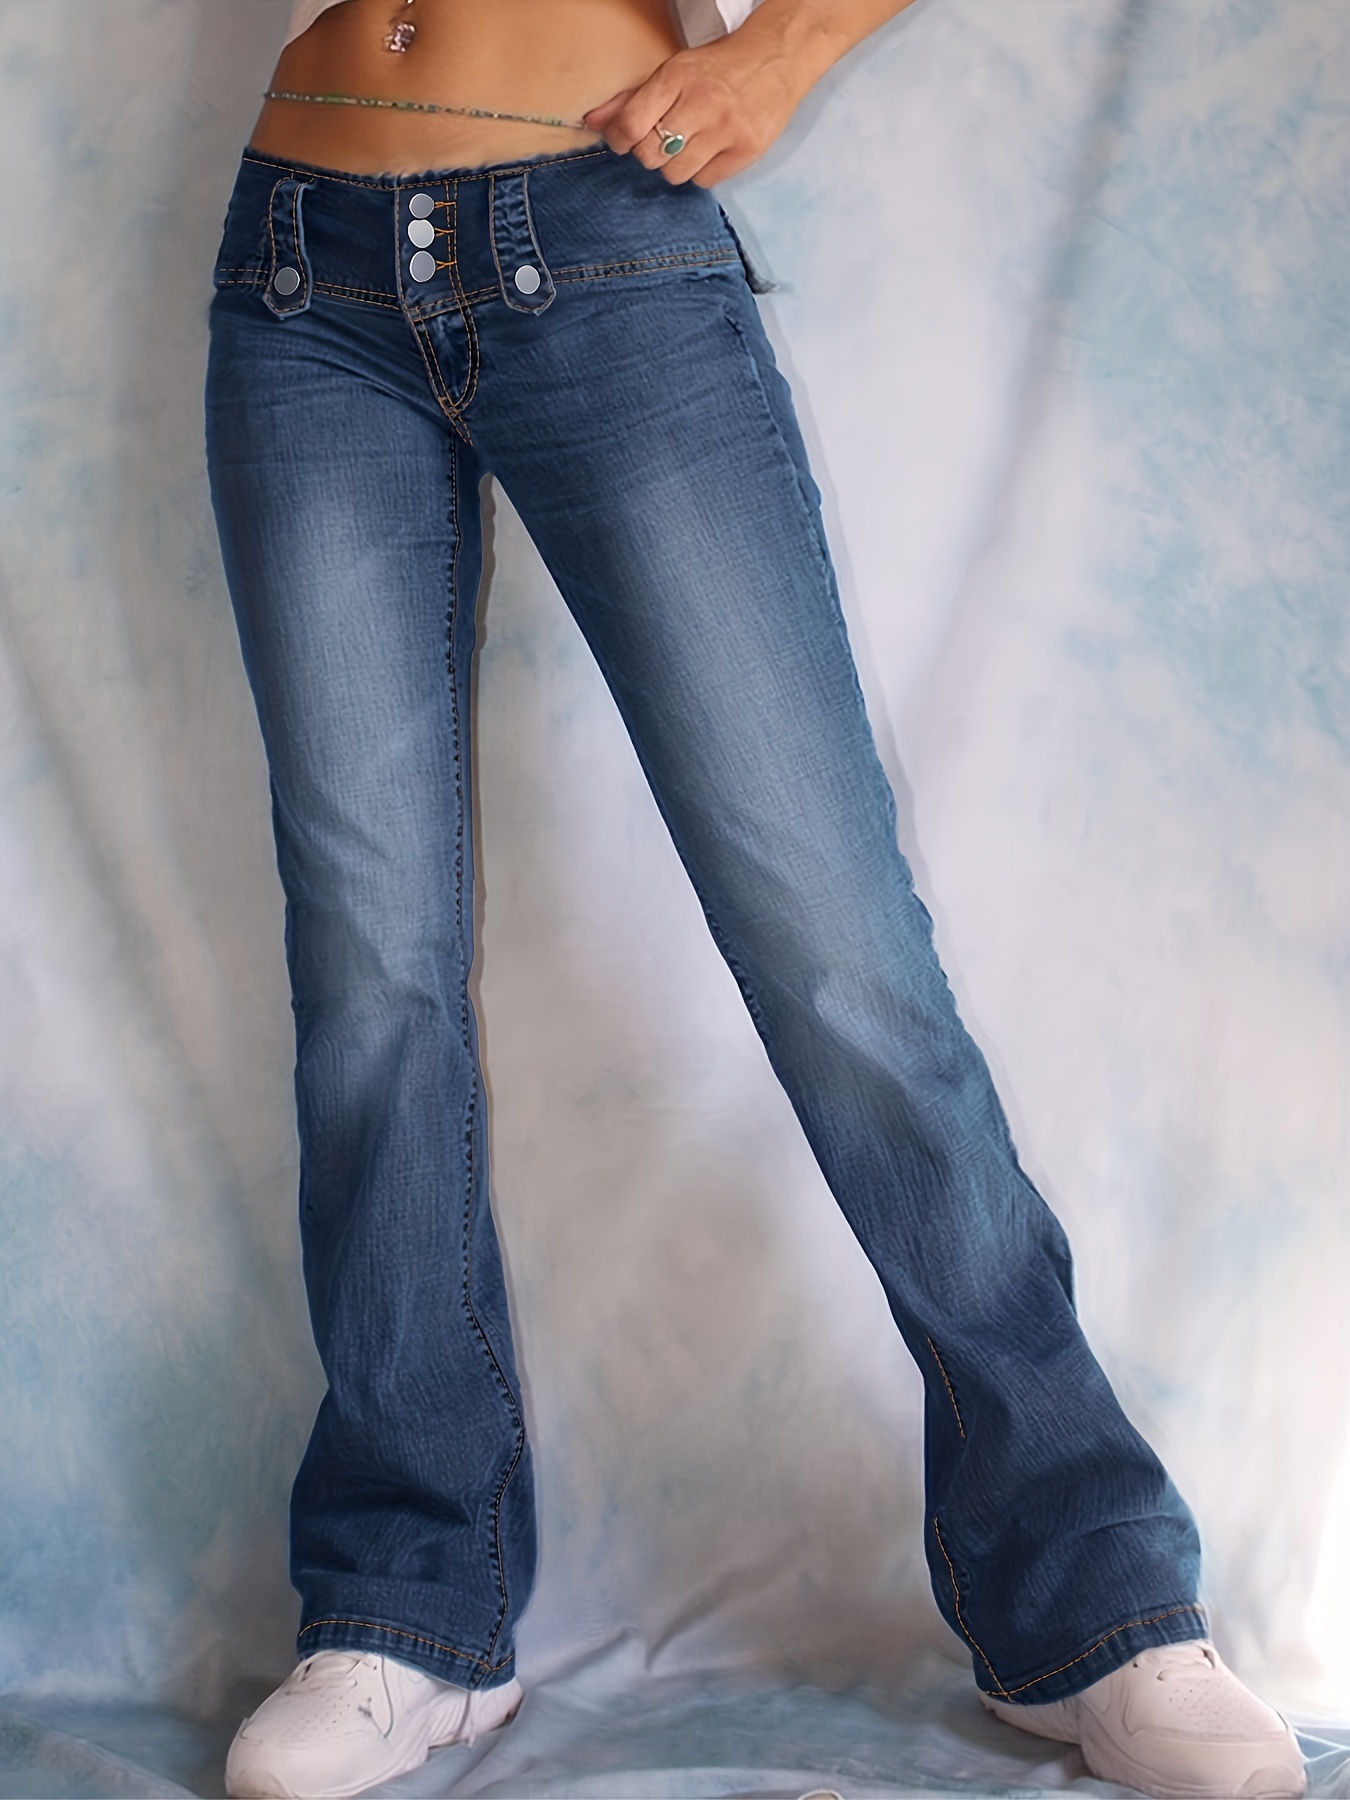 Jeans acampanados de cintura alta * oscuro, pantalones de mezclilla  elásticos de piernas anchas con parte inferior de campana de tiro alto,  jeans y